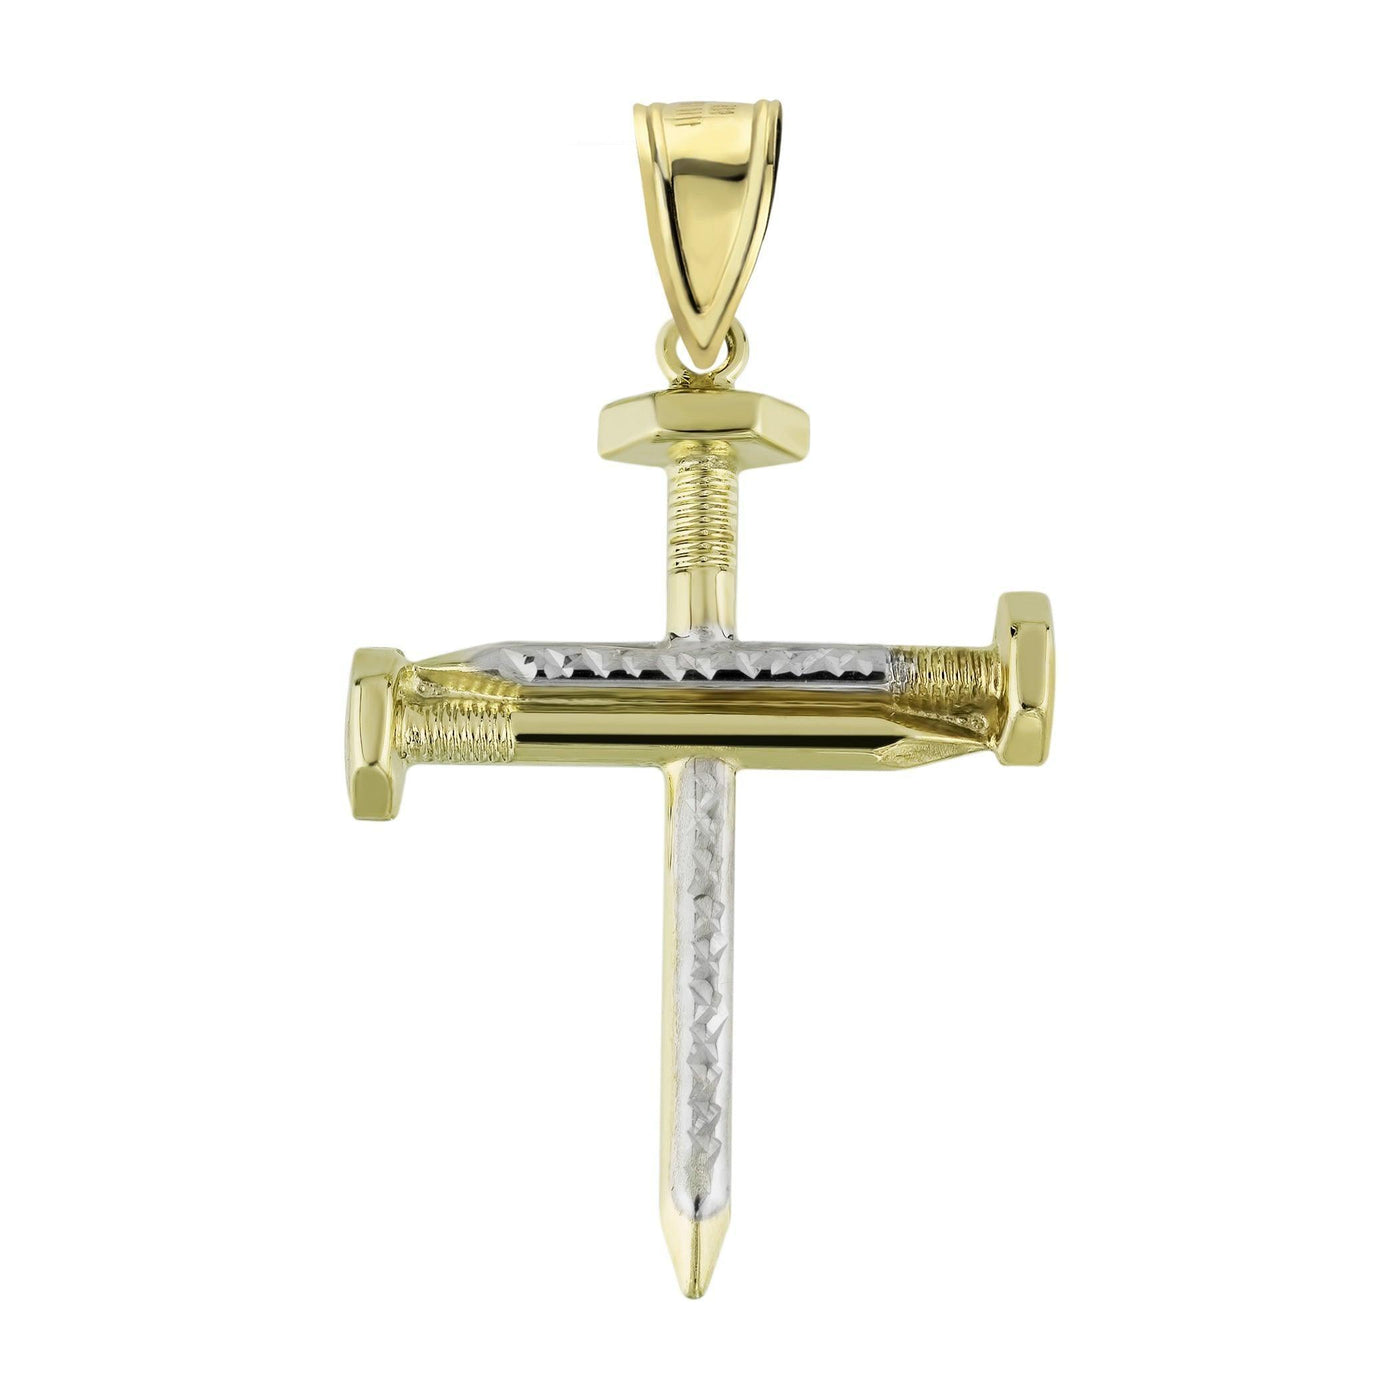 2 1/8" Screw Nail Cross Charm Pendant Diamond Cut 10K Yellow Gold - bayamjewelry